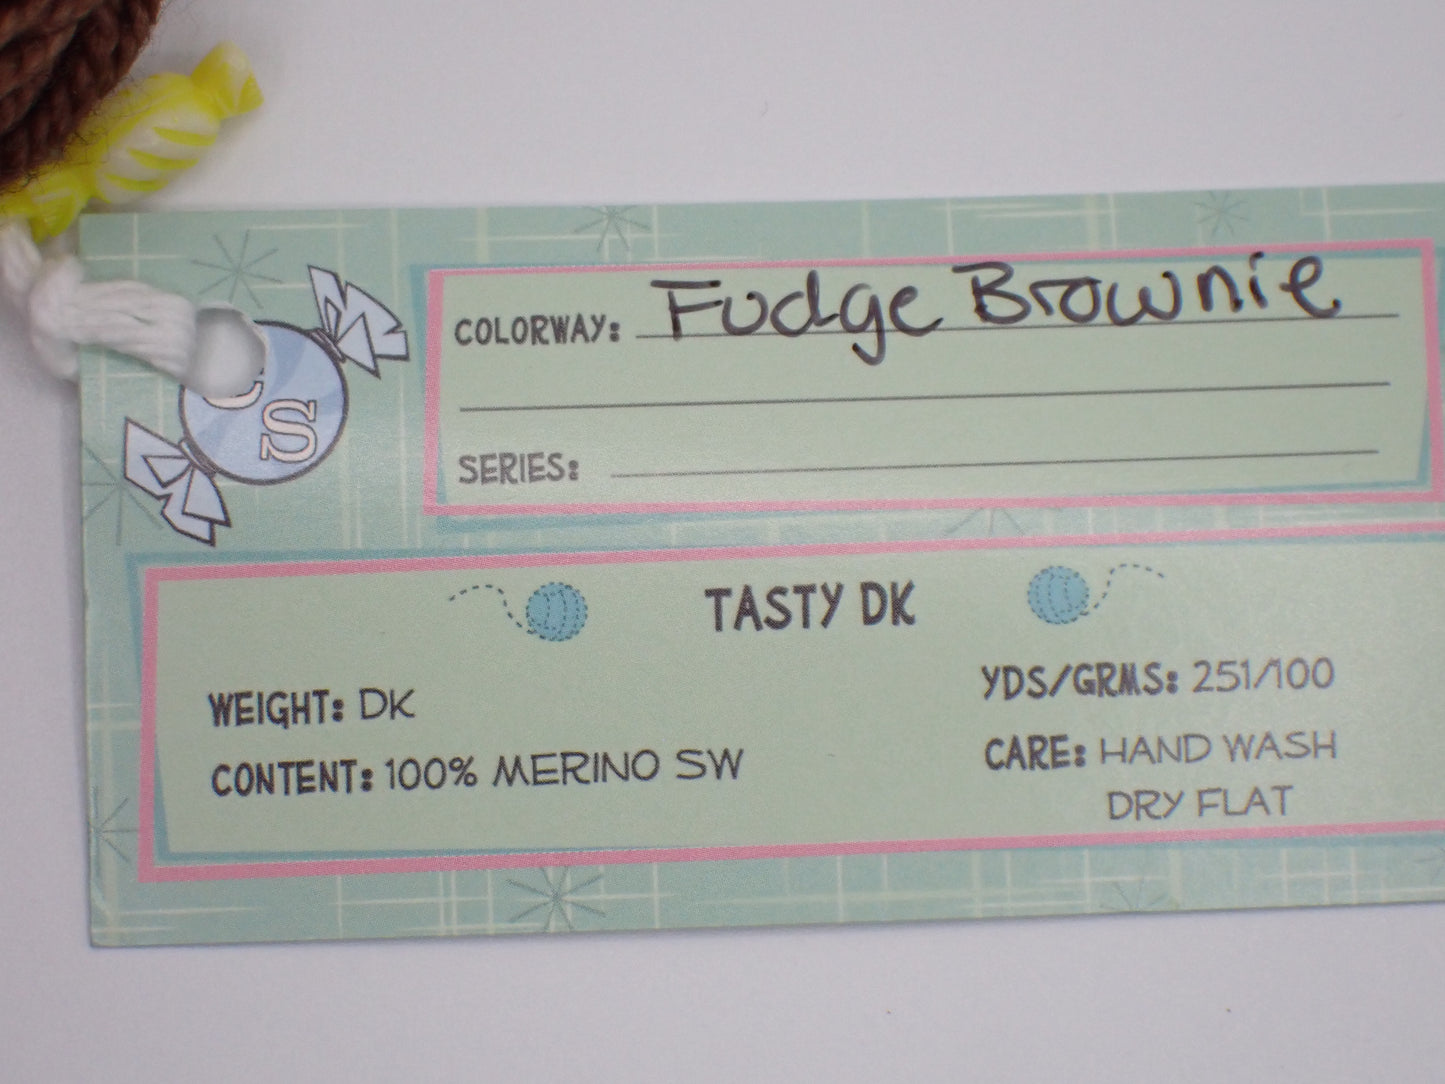 Candy Skein Yarn Tasty DK Weight Fudge Brownie